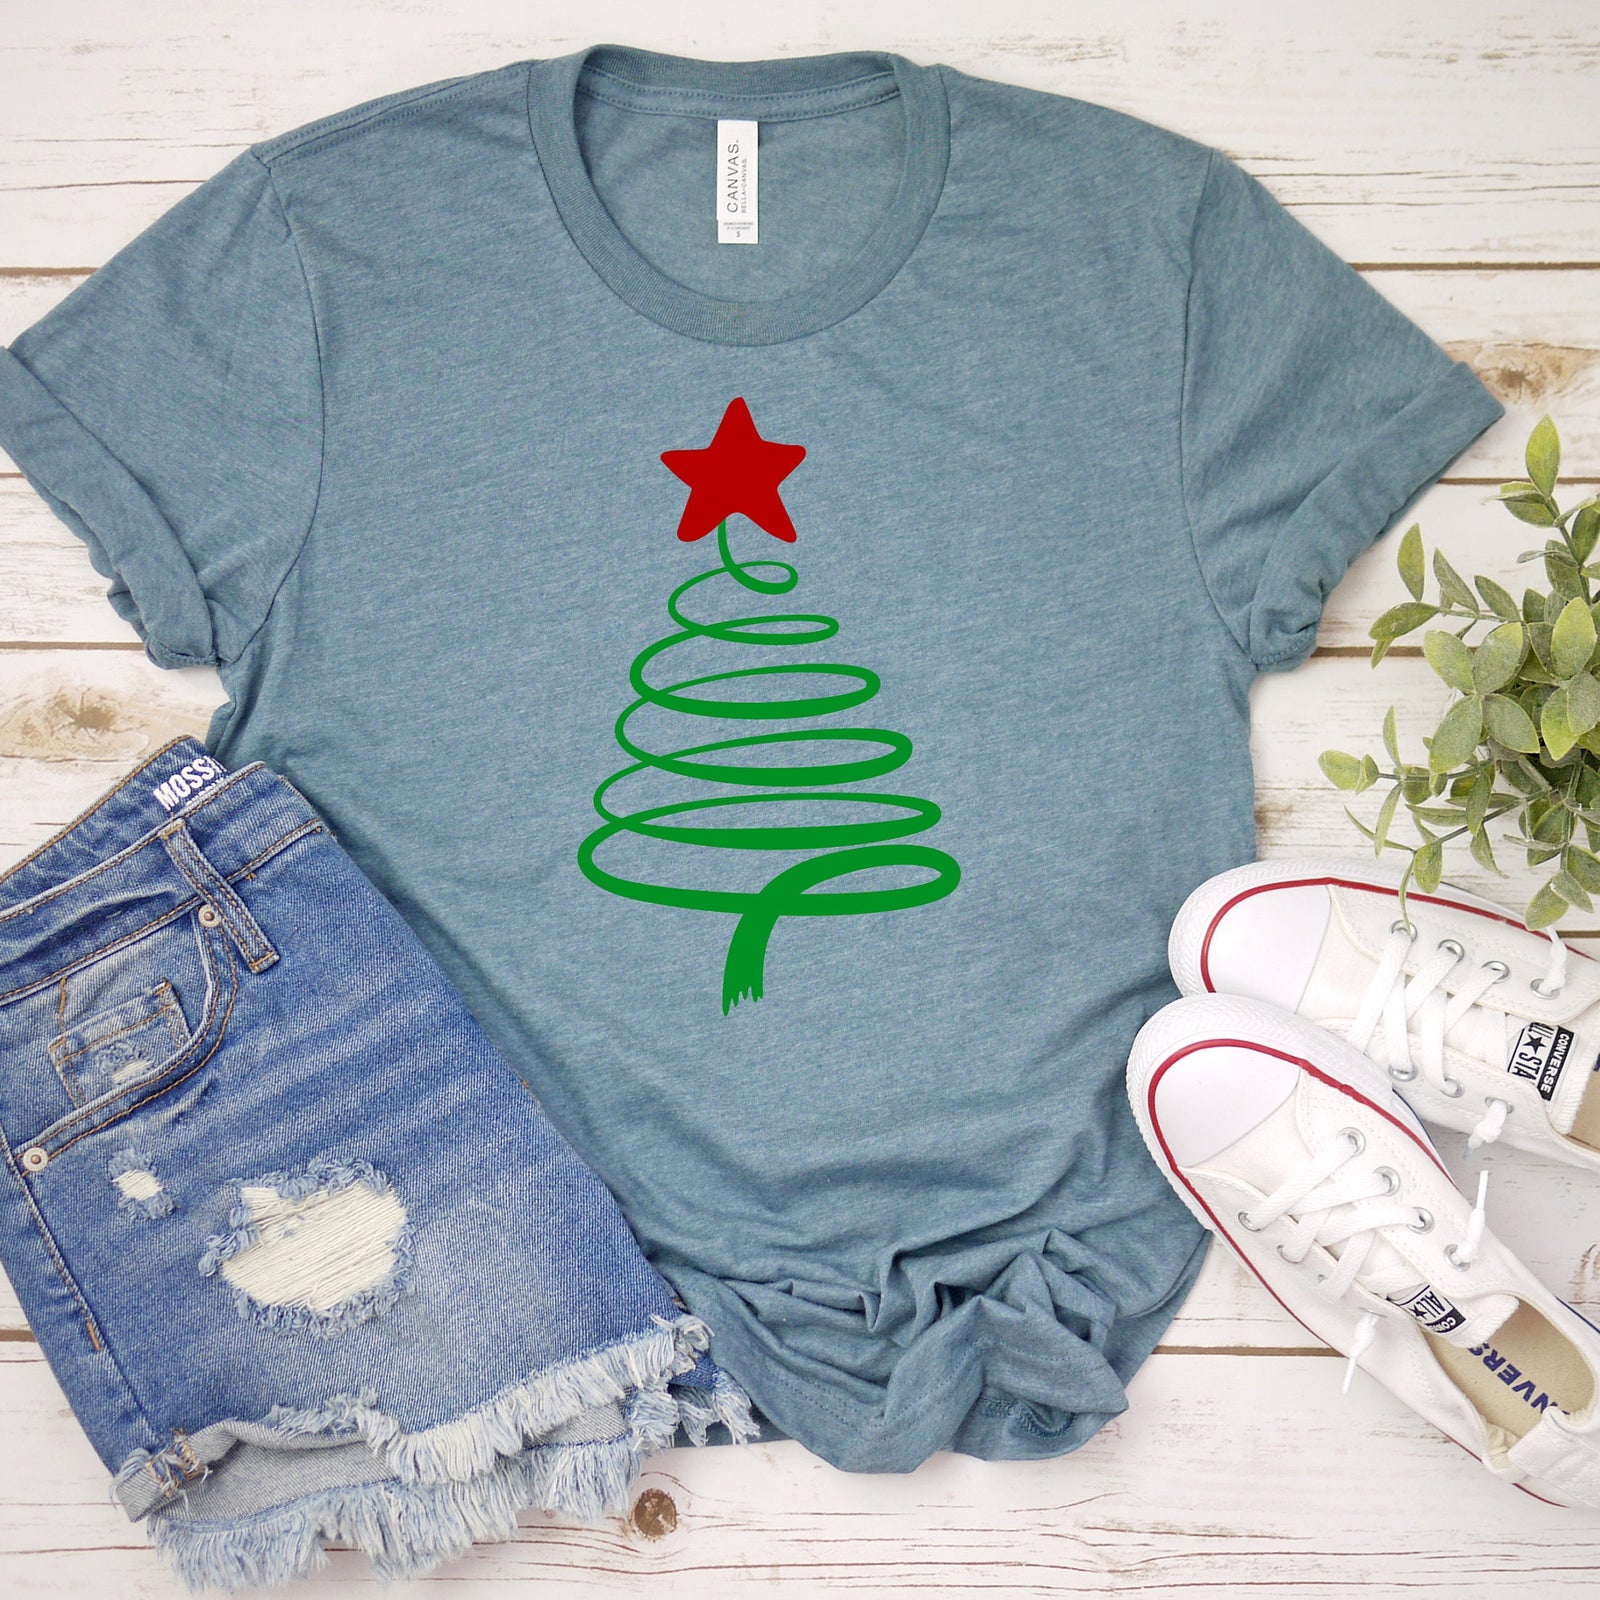 Swirly Christmas Tree Shirt - X-Mas T Shirt - Cute Christmas Holiday Shirt